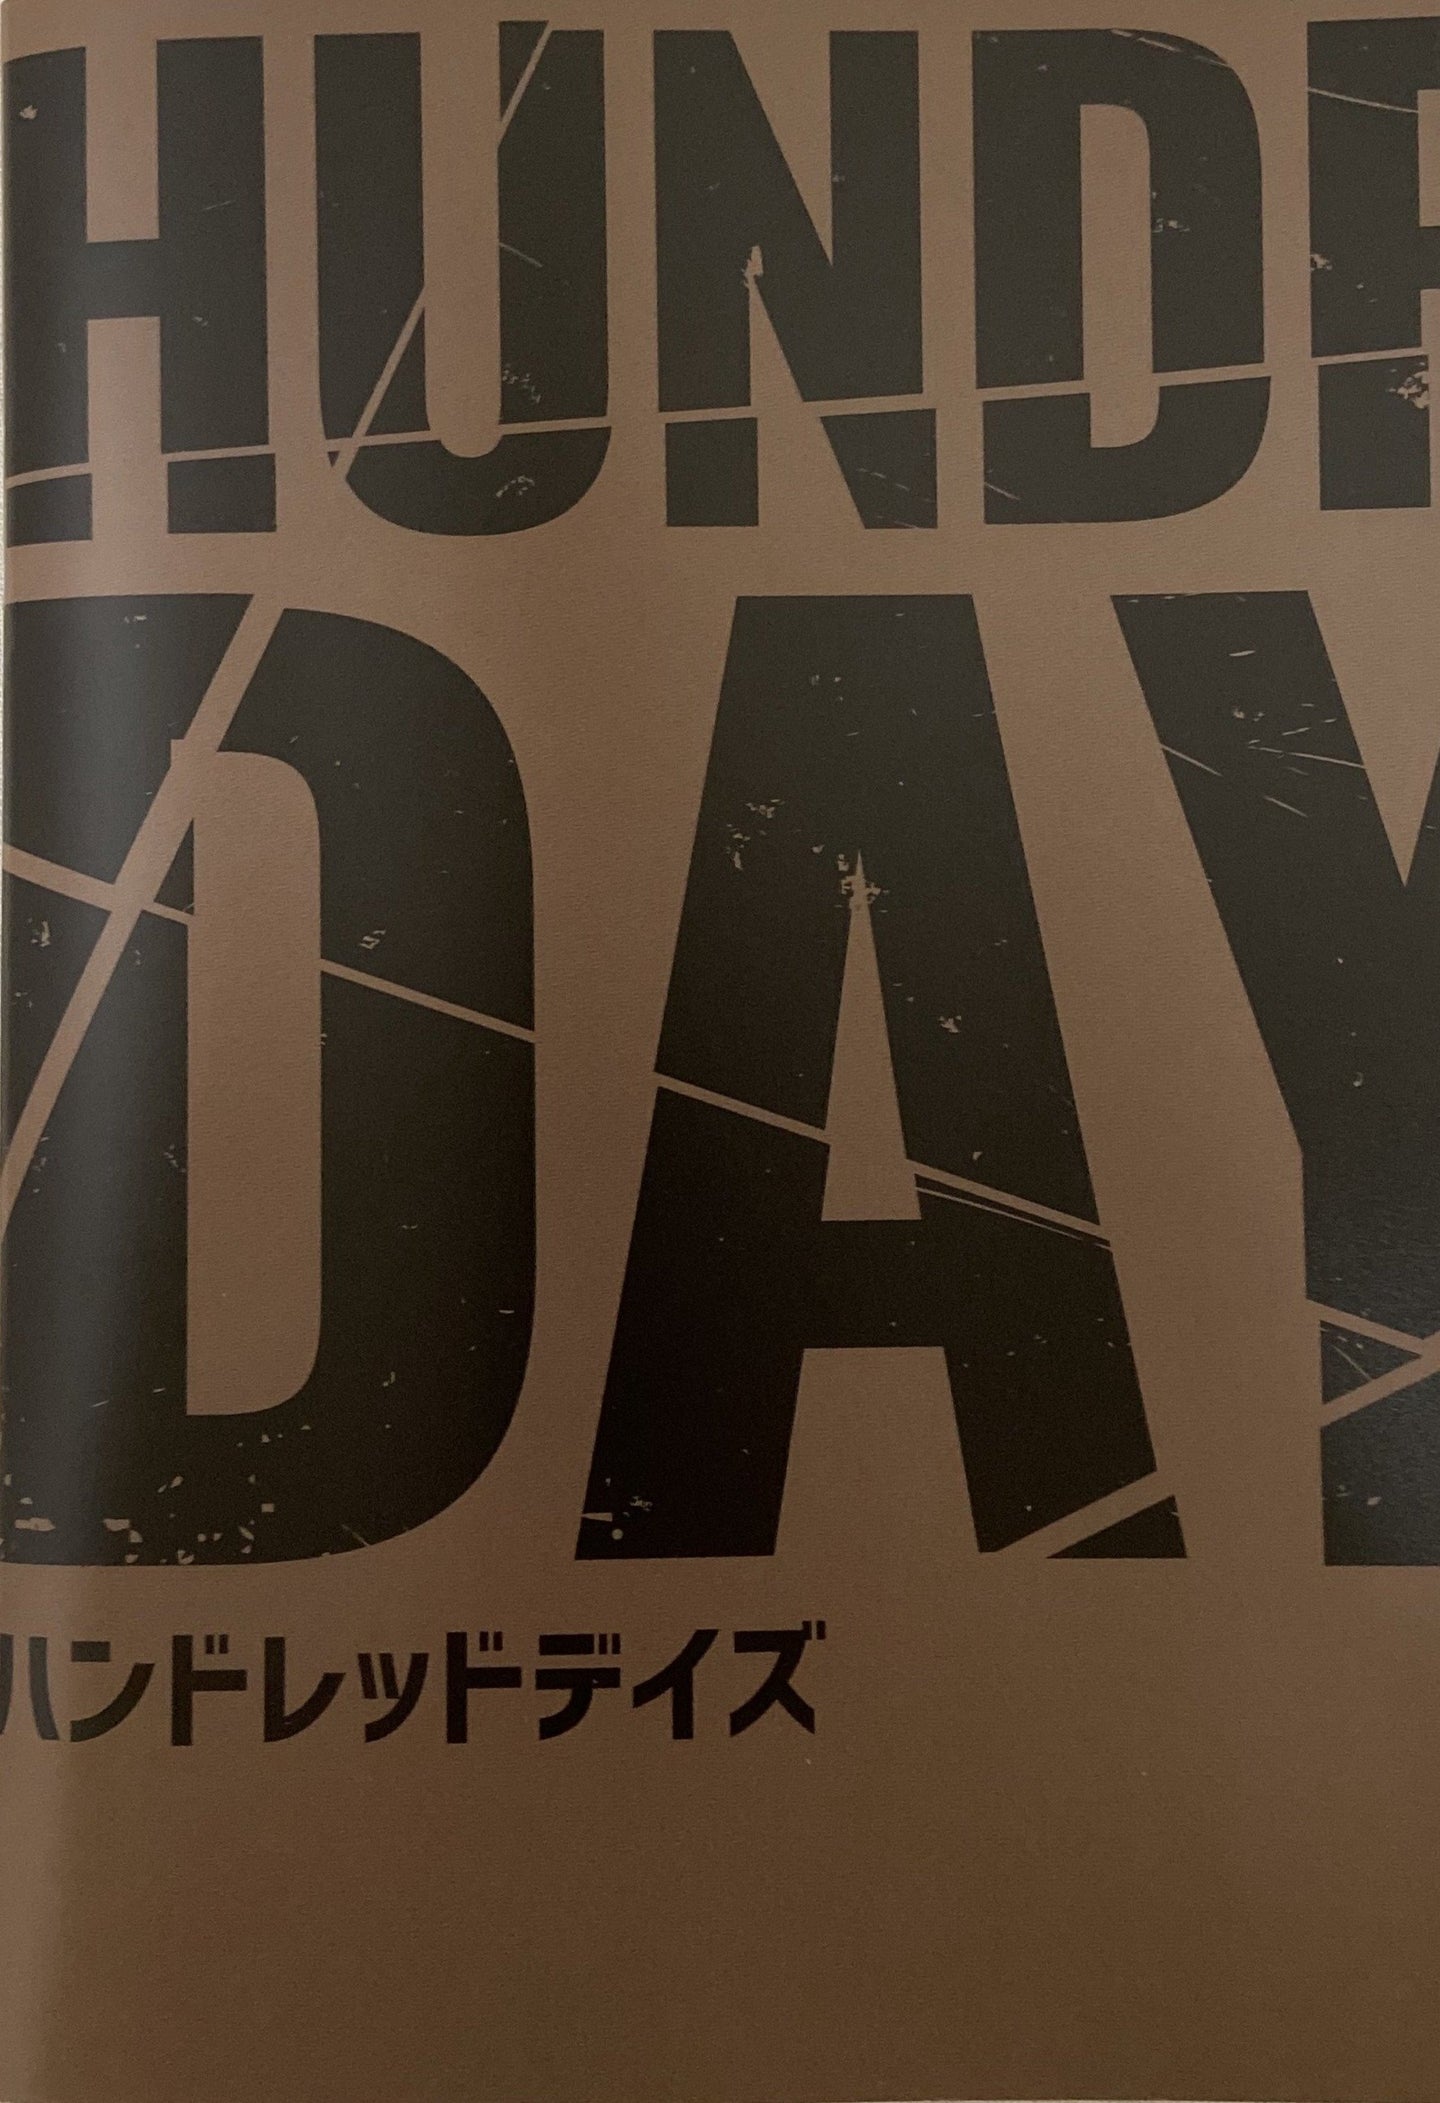 HUNDRED DAYS 公演パンフレット